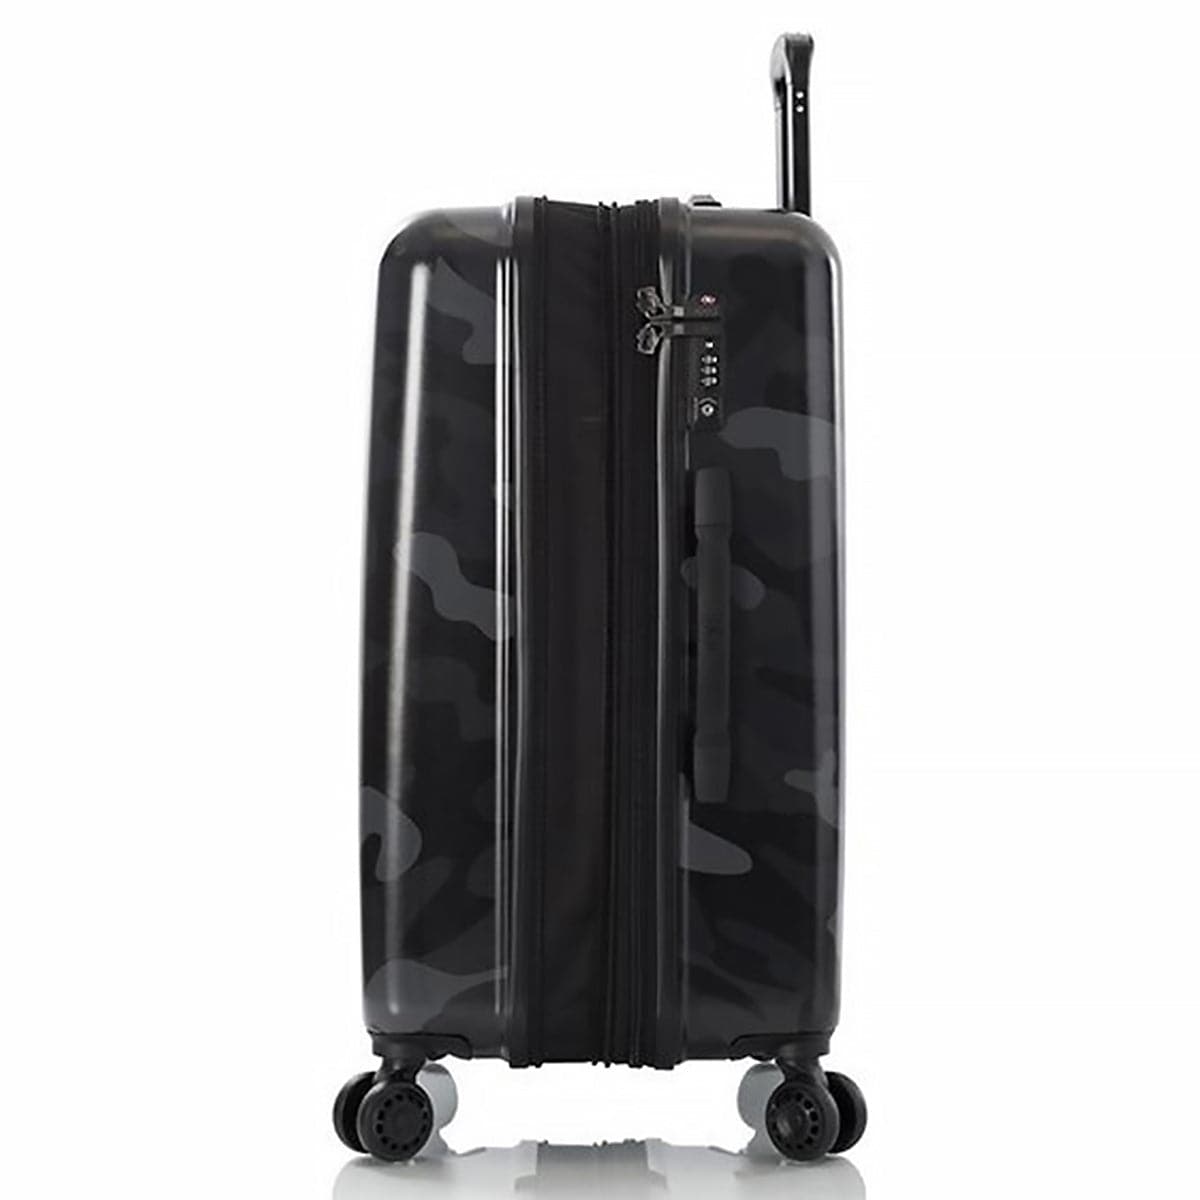 Heys 26" Camo Fashion Spinner Luggage